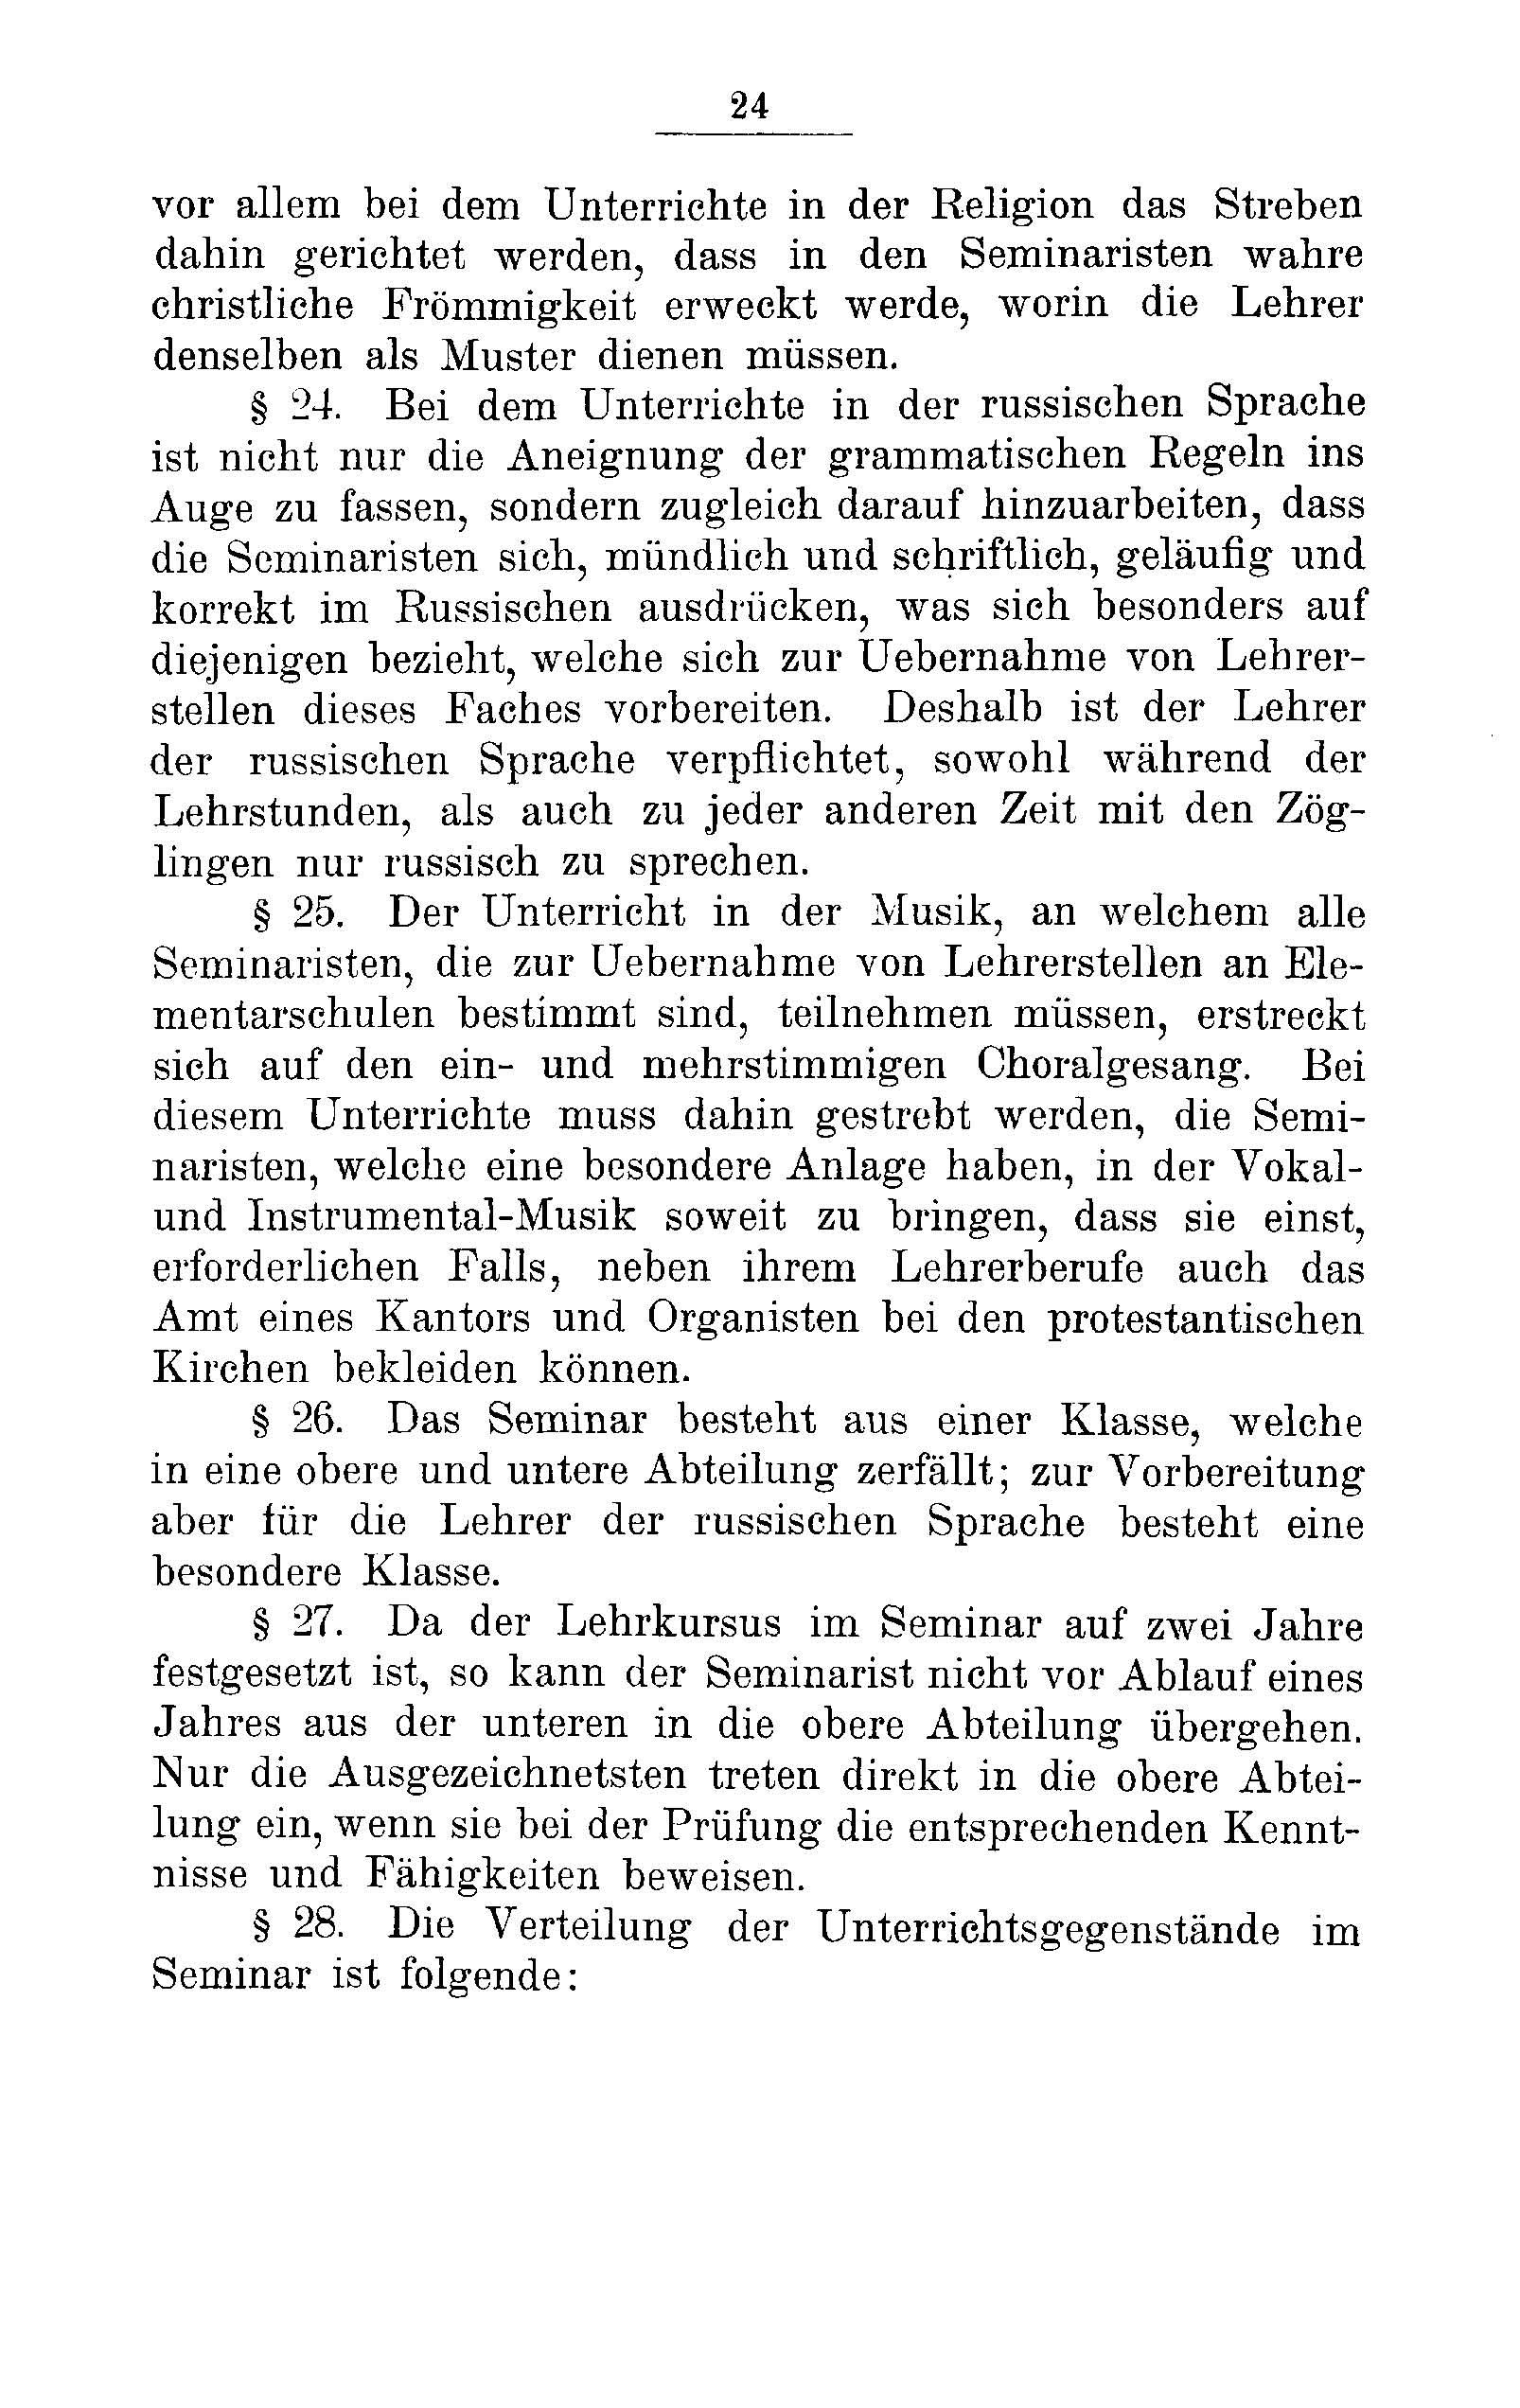 Das Erste Dorpatsche Lehrer-Seminar (1890) | 26. Haupttext